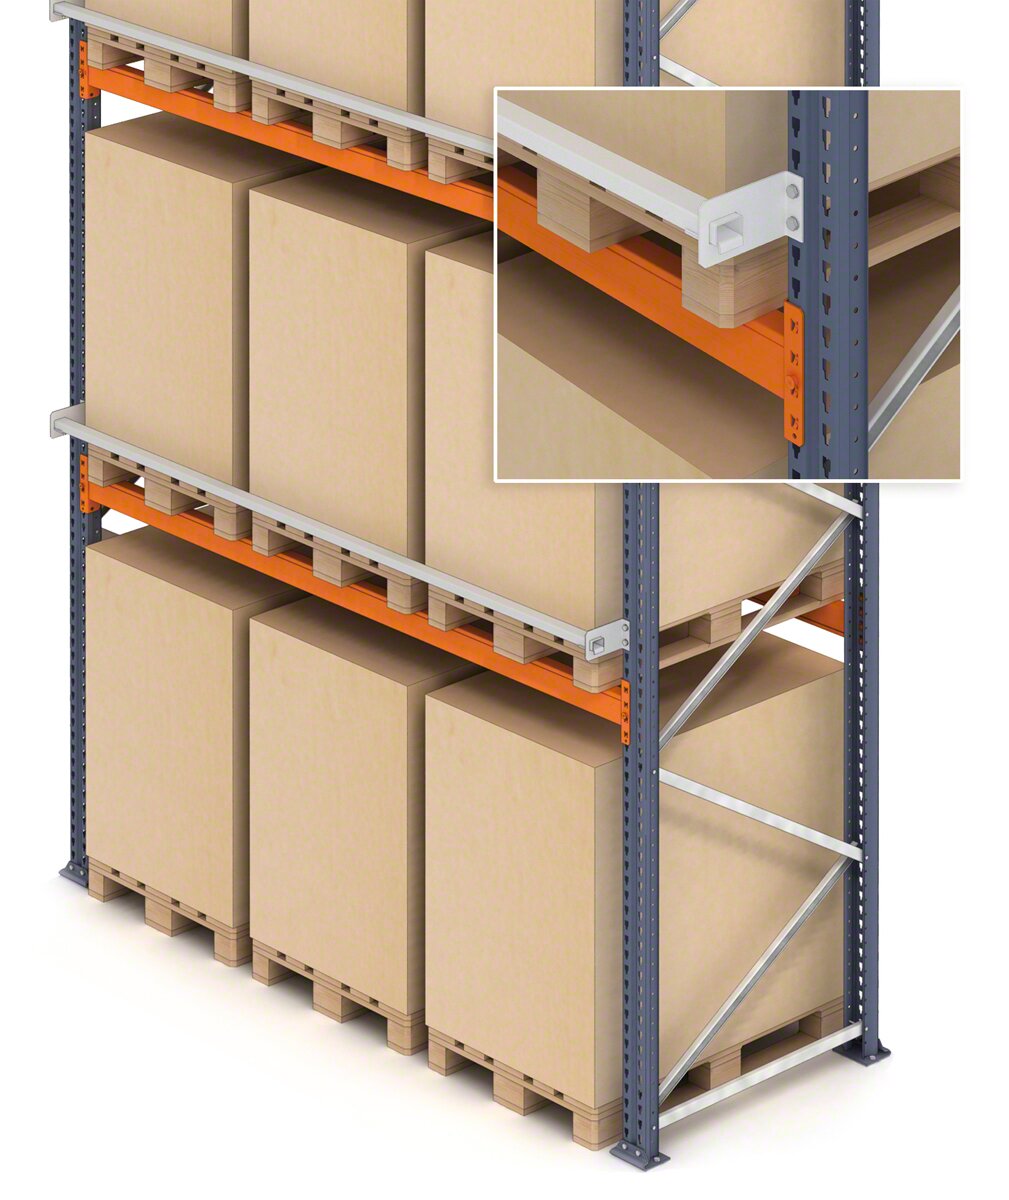 Es posible añadir un perfil de seguridad para la mercancía depositada en las estanterías de palets